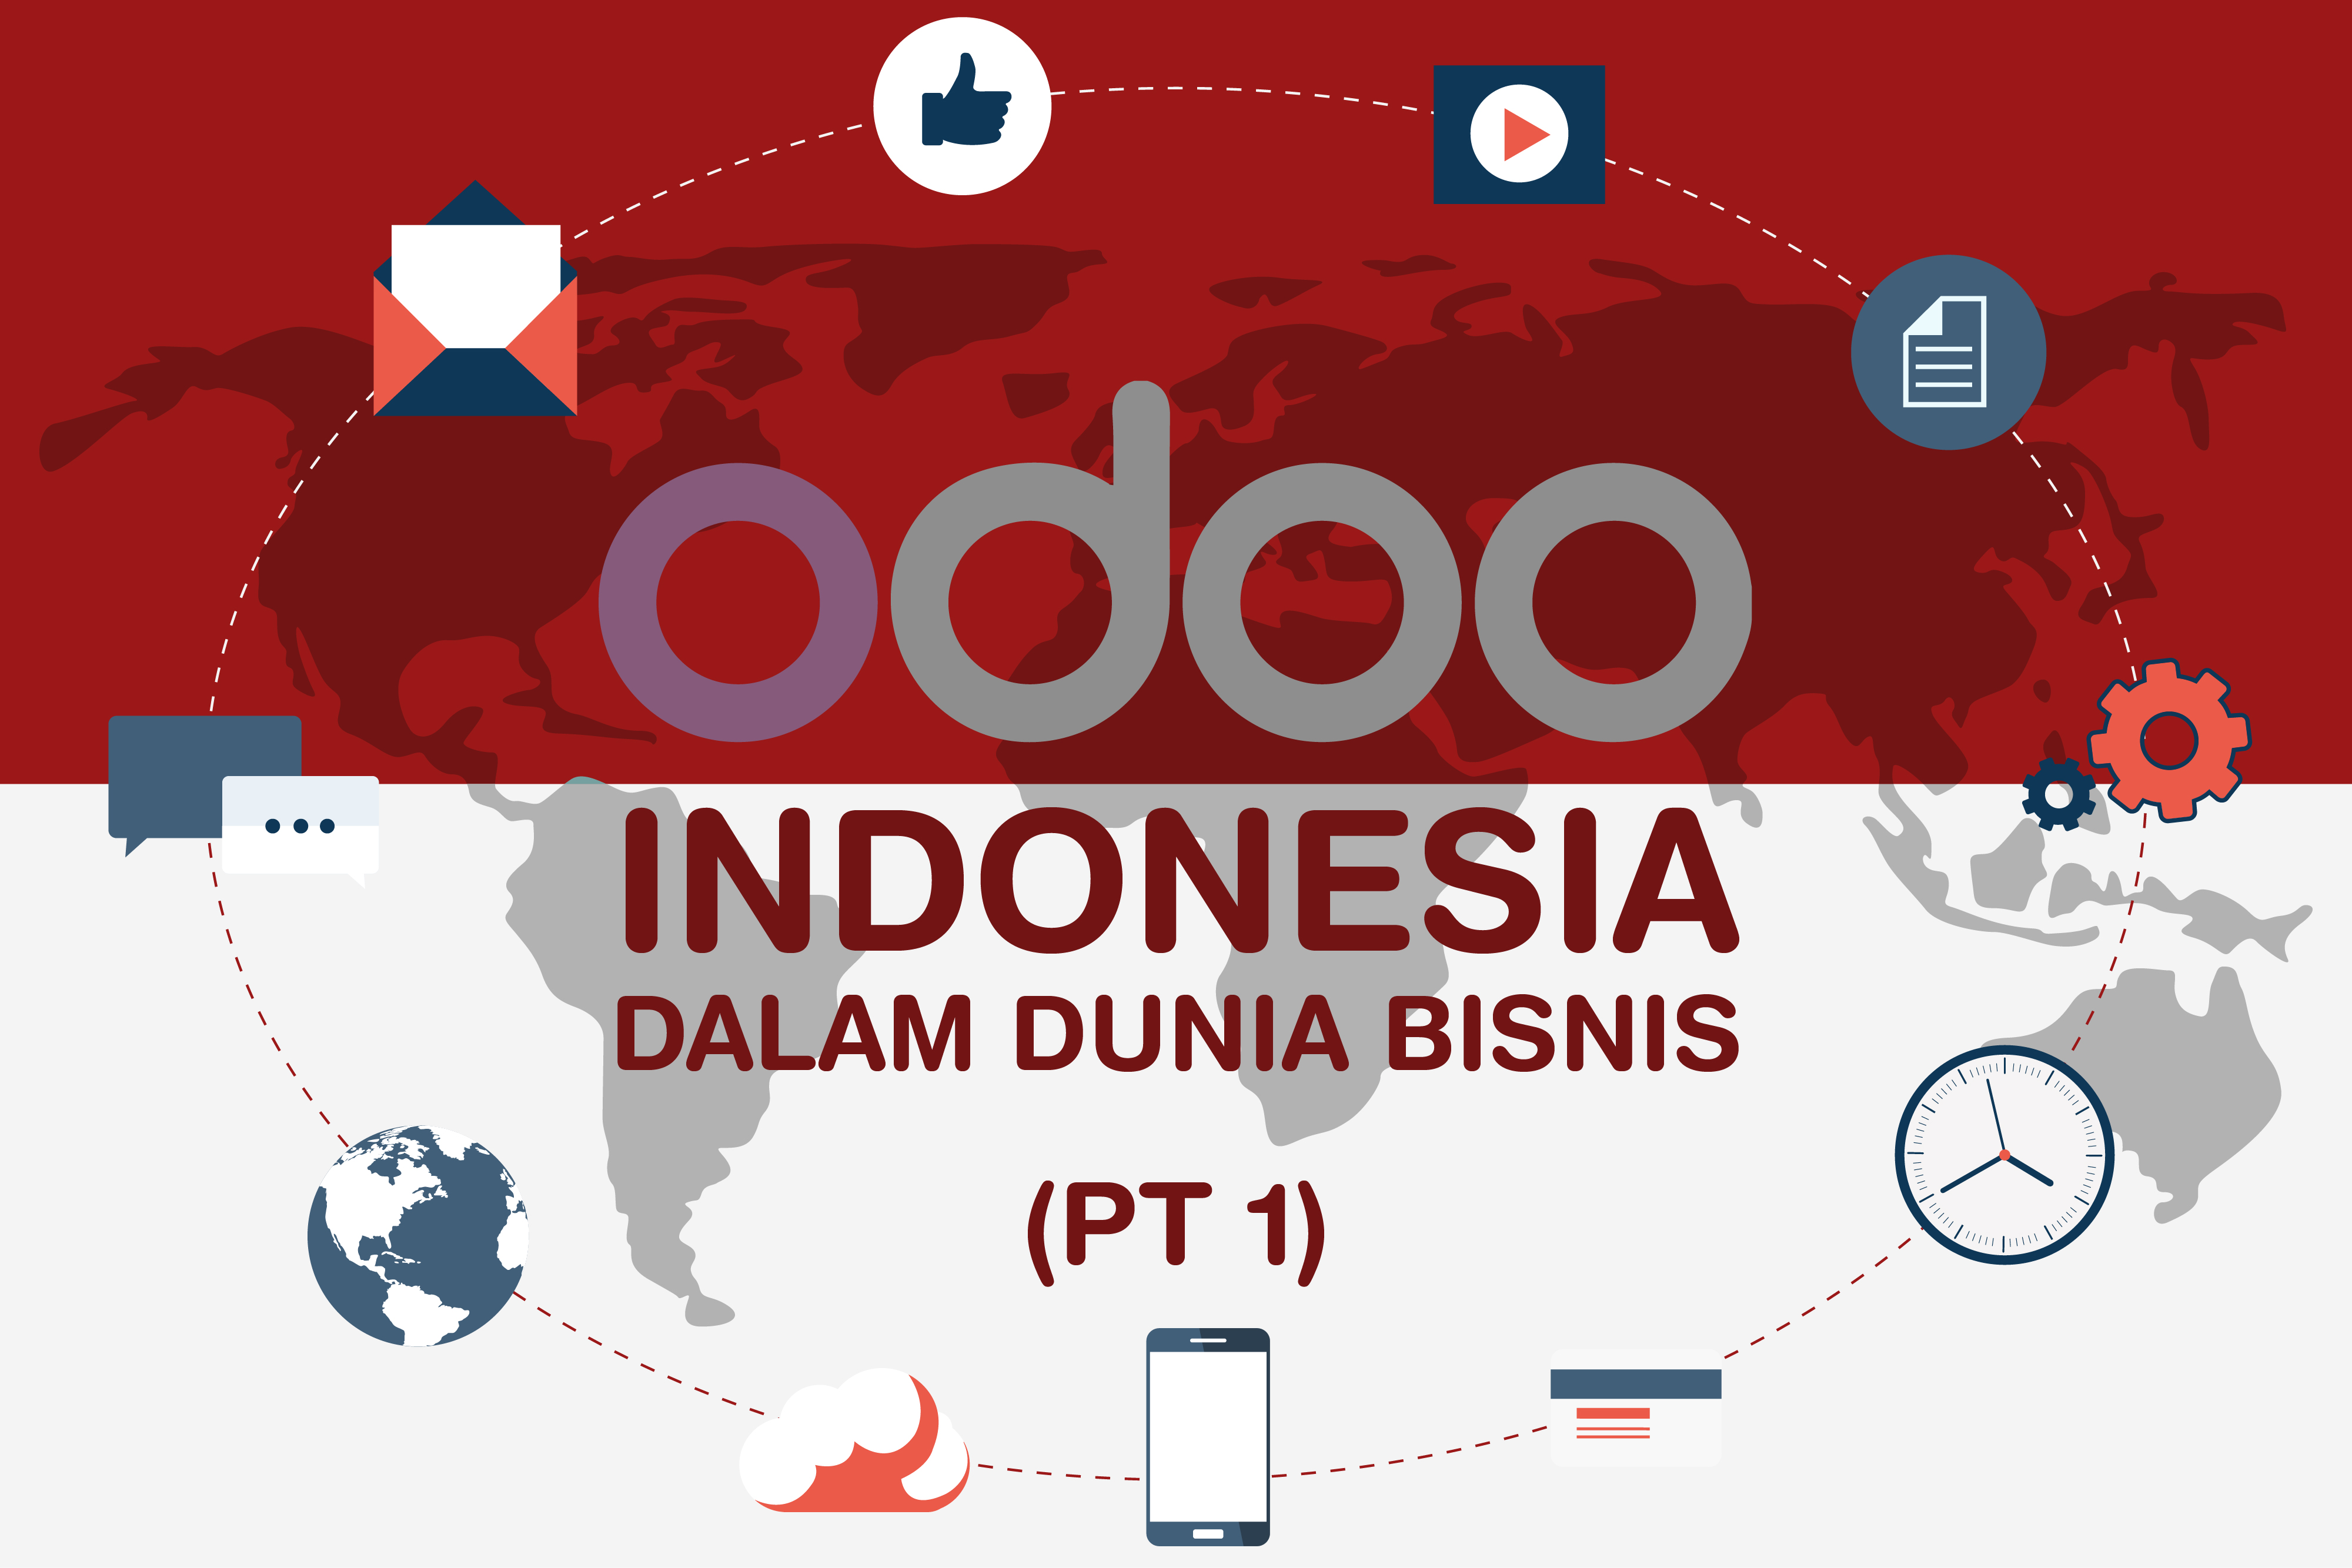 Odoo Indonesia dalam dunia bisnis (Pt.1)